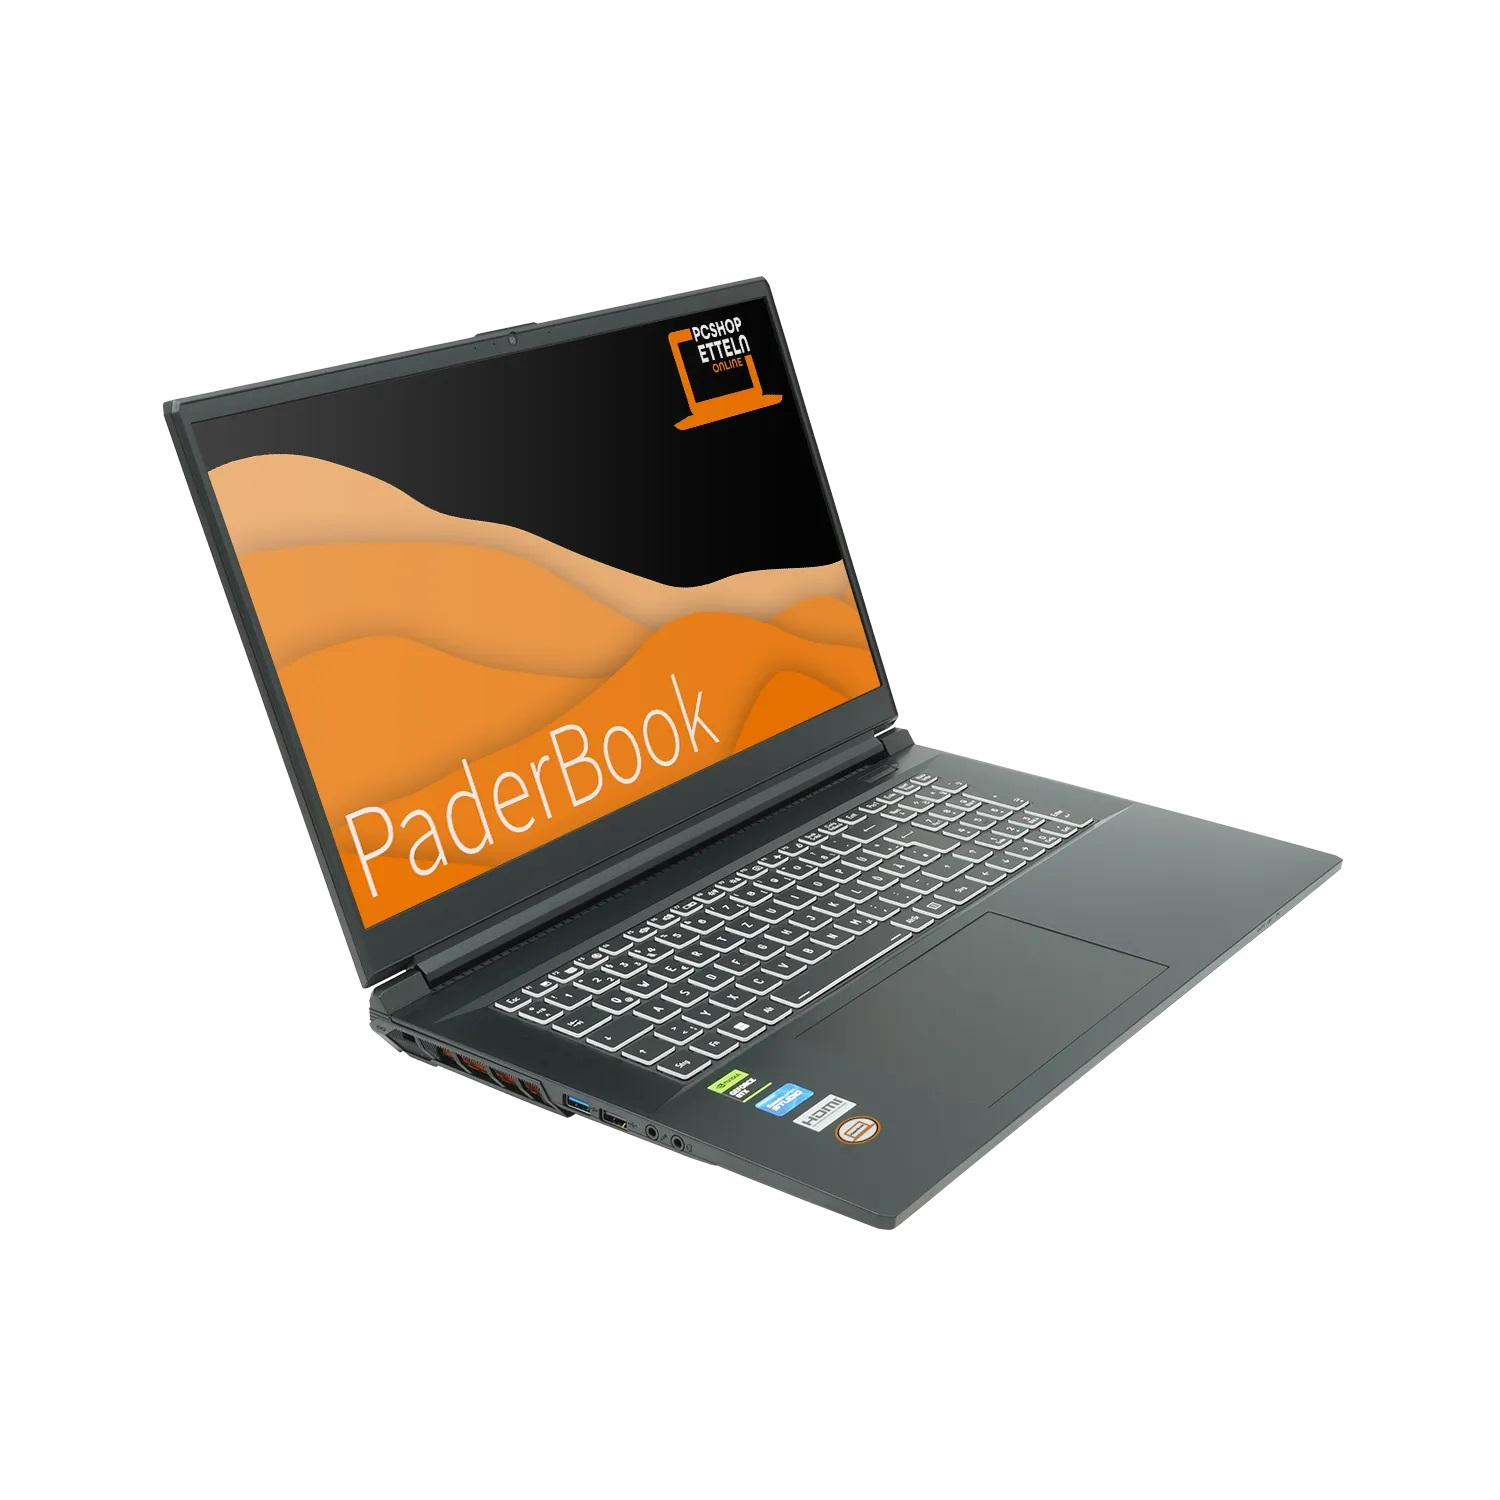 PADERBOOK CAD i97, fertig installiert Notebook mit Schwarz Display, 17,3 Zoll GB 500 RAM, GB aktiviert, SSD, und 8